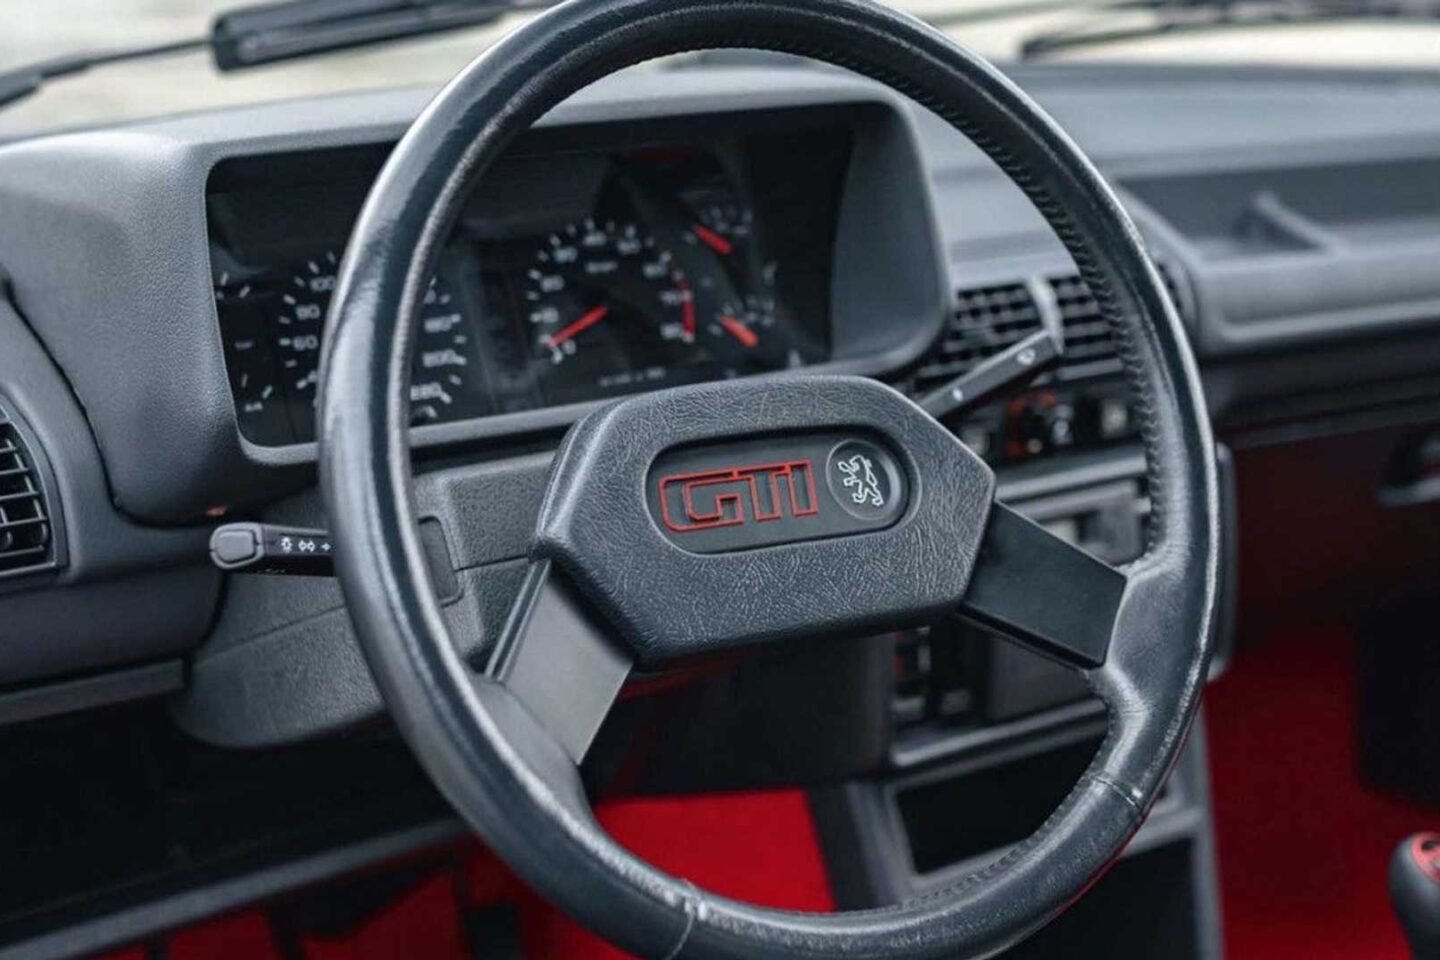 Peugeot 205 GTI interior